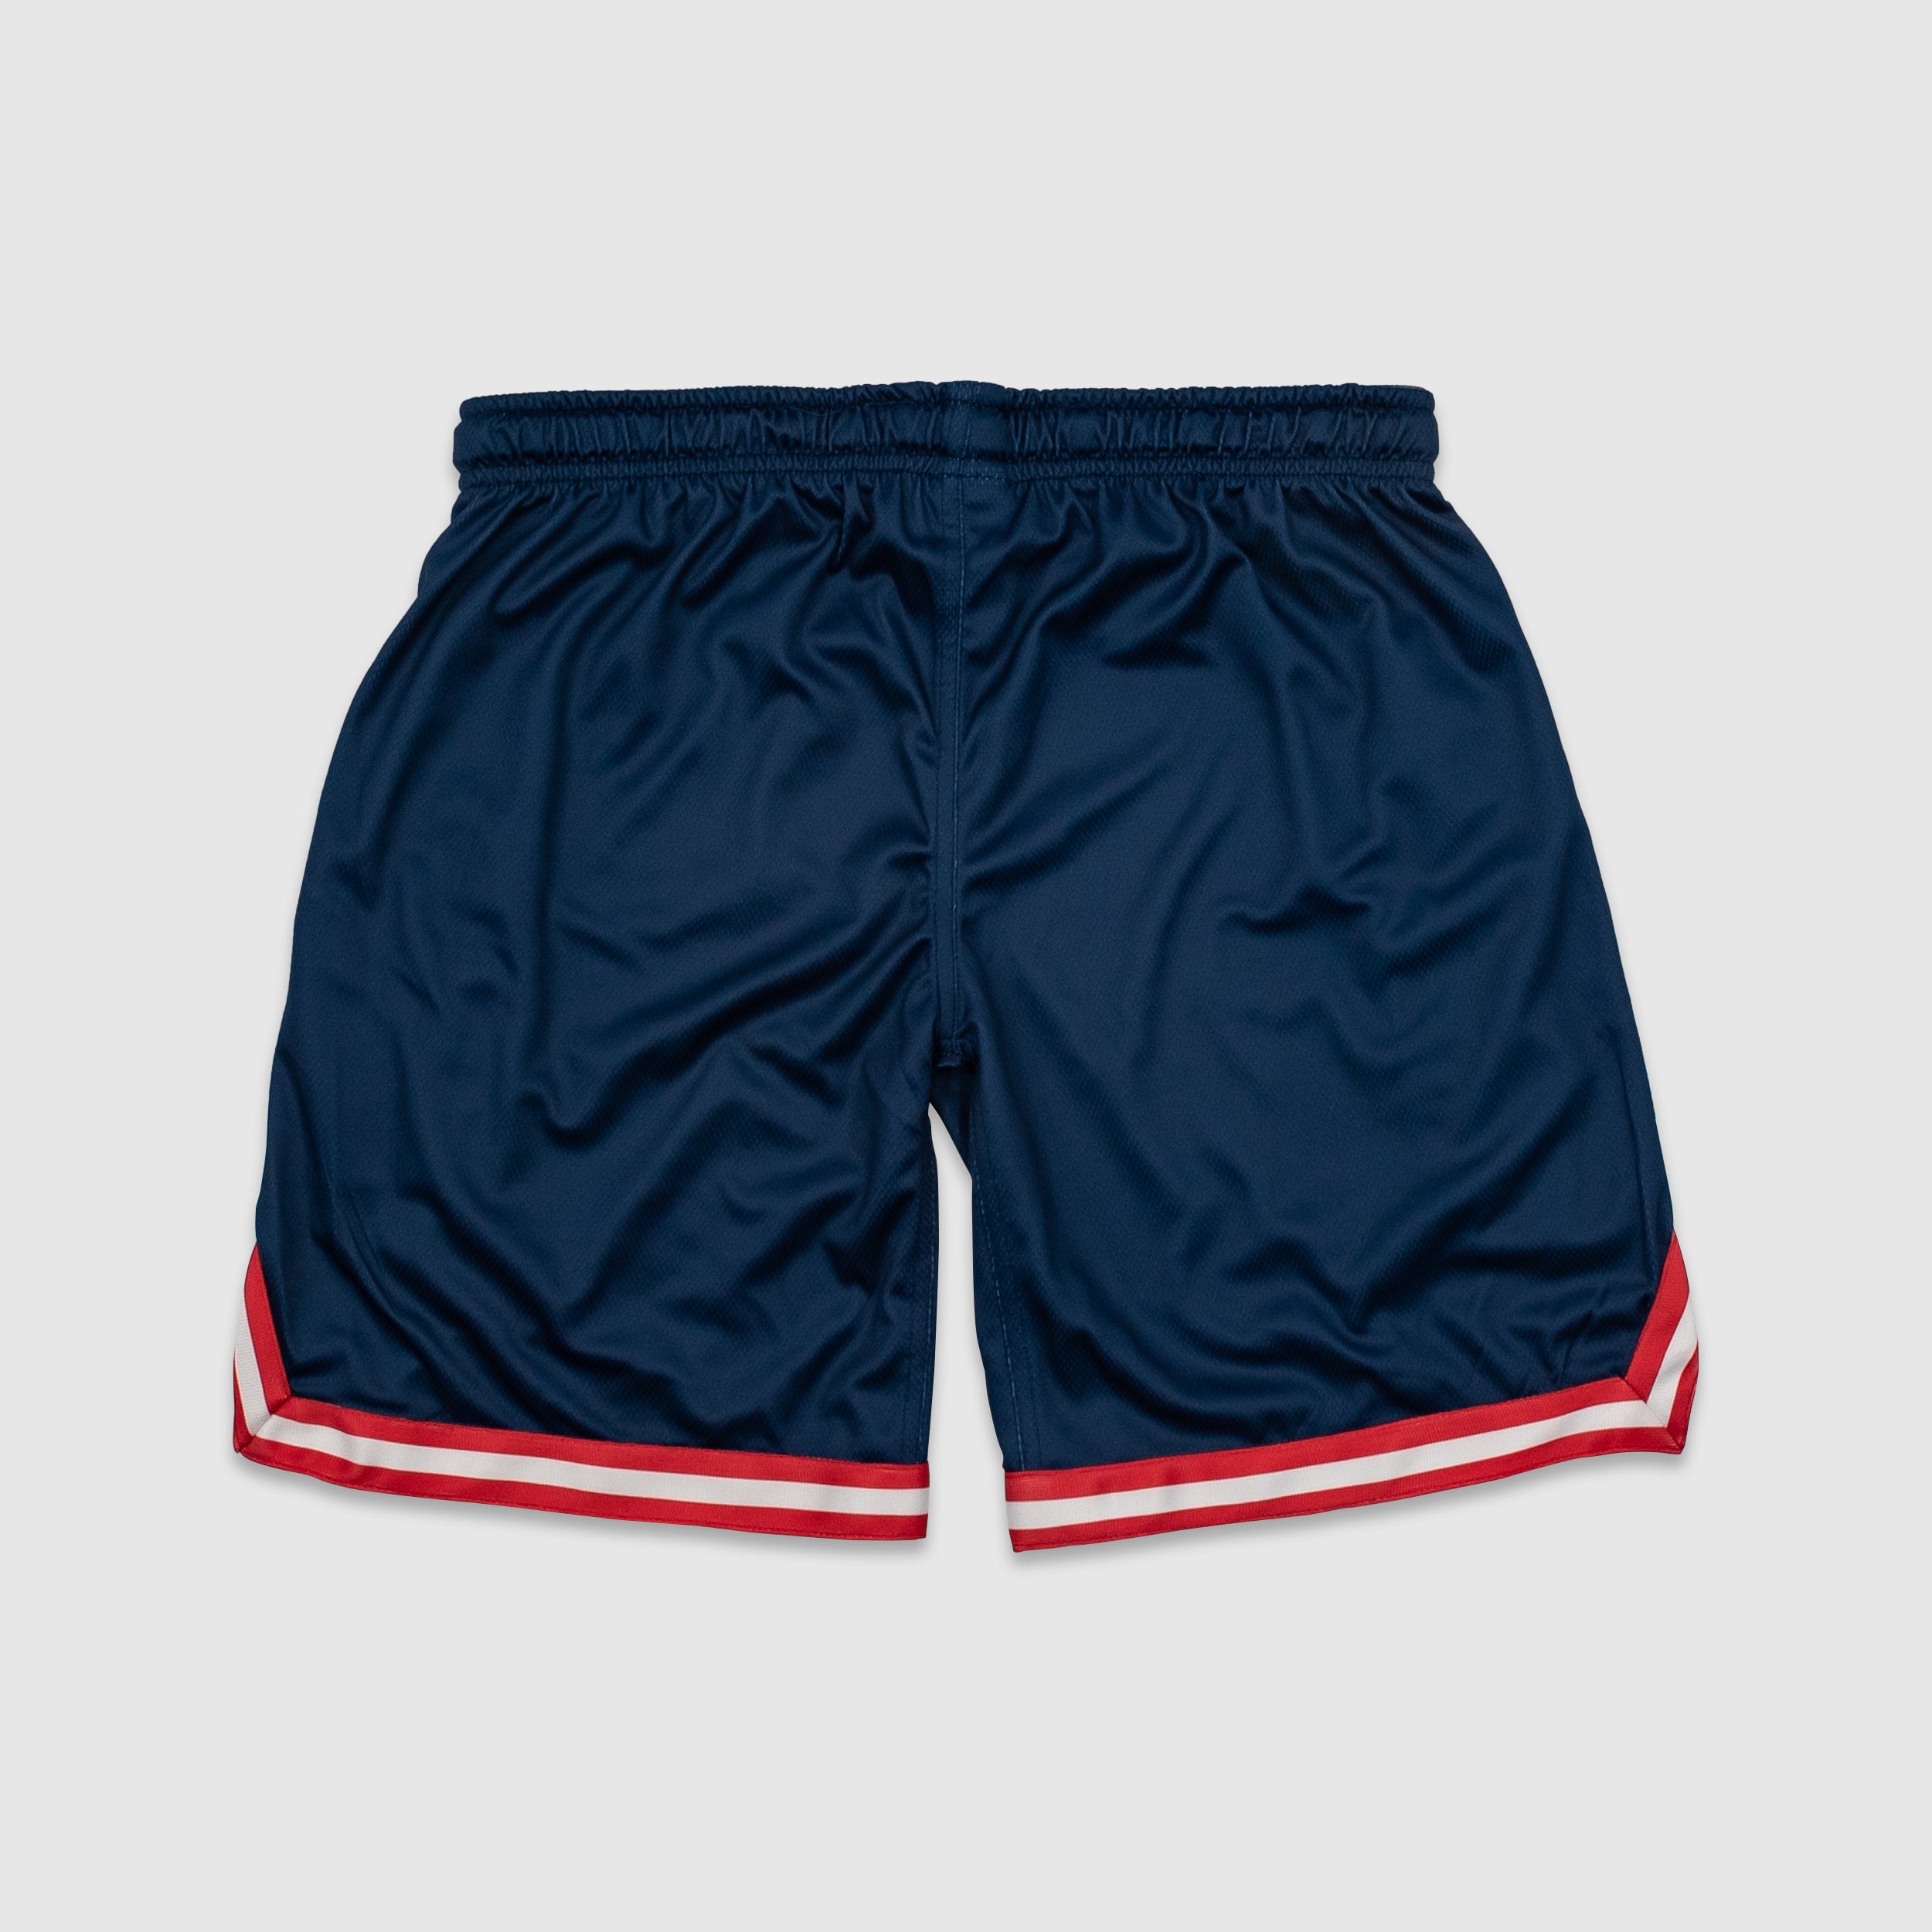 Vantage Varsity Shorts - R/W/B